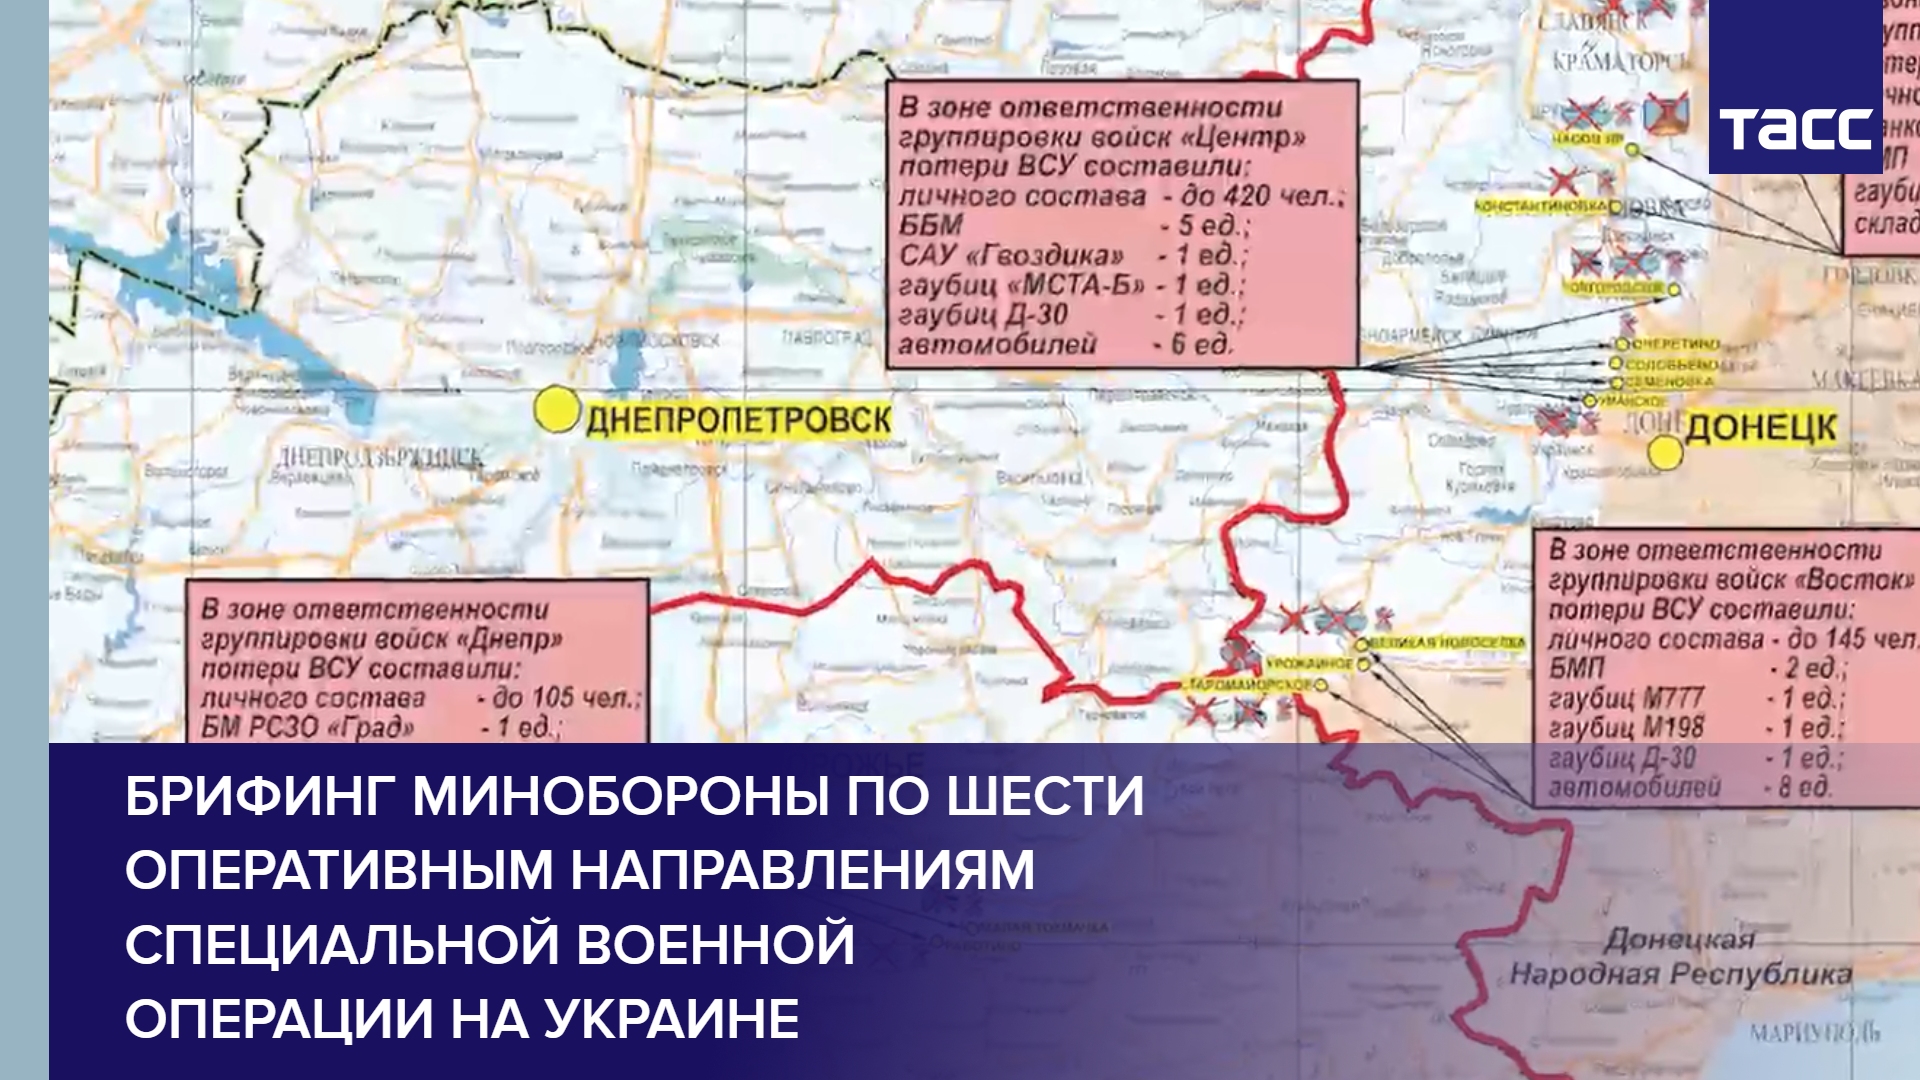 Брифинг Минобороны по шести оперативным направлениям специальной военной операции на Украине